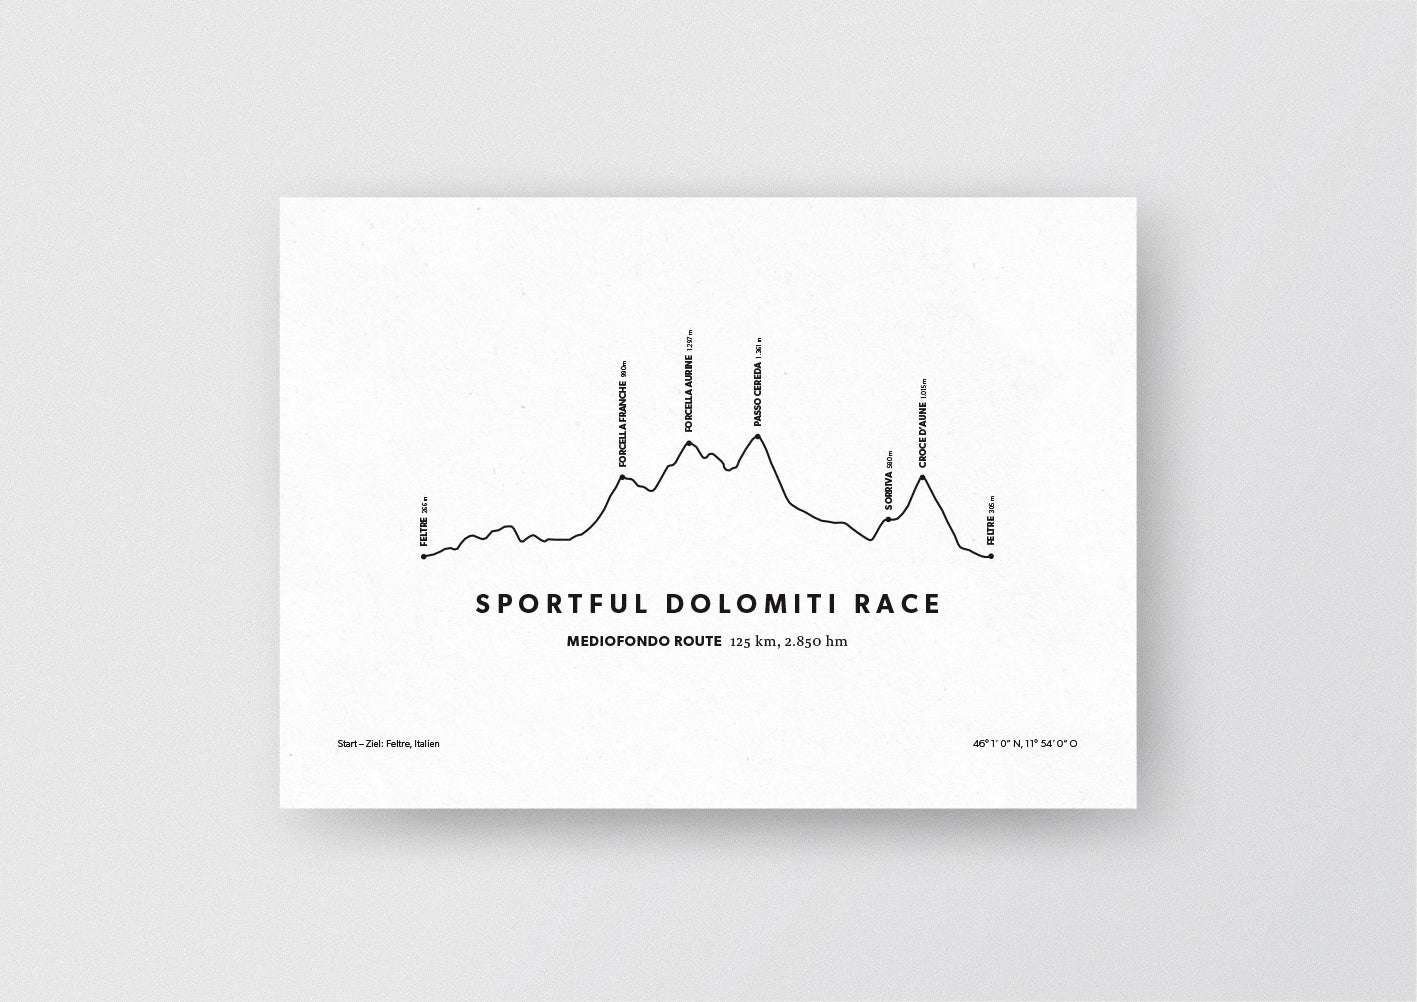 Minimalistische Illustration des Sportful Dolomiti Race, einem der schönsten Rad-Marathons in den Alpen, als stilvoller Einrichtungsgegenstand für Zuhause. Mediofondo Route